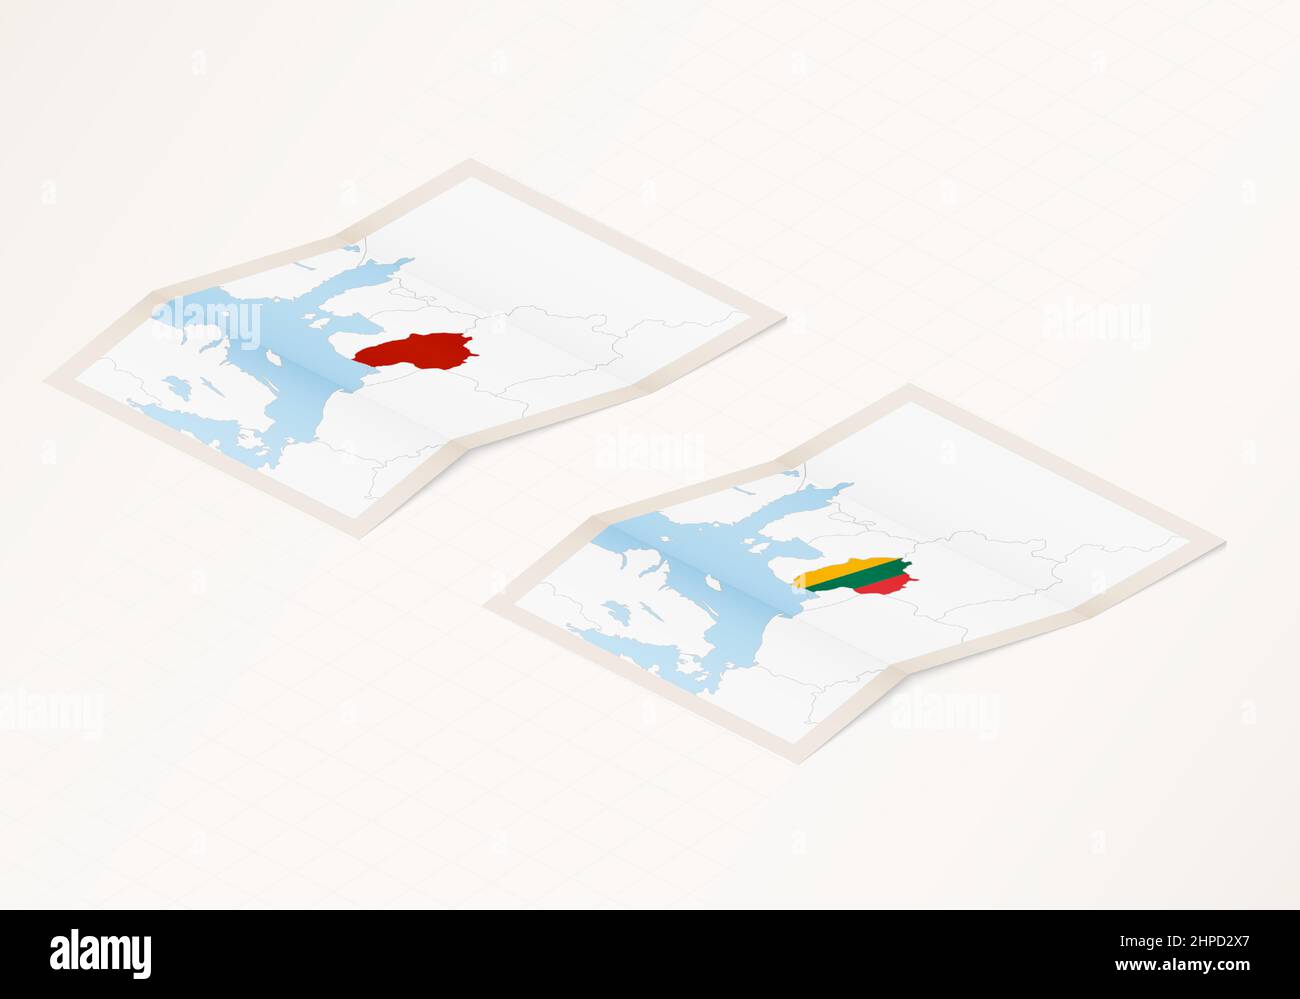 Due versioni di una mappa ripiegata della Lituania con la bandiera del paese lituano e con il colore rosso evidenziato. Set di mappe vettoriali isometriche. Illustrazione Vettoriale